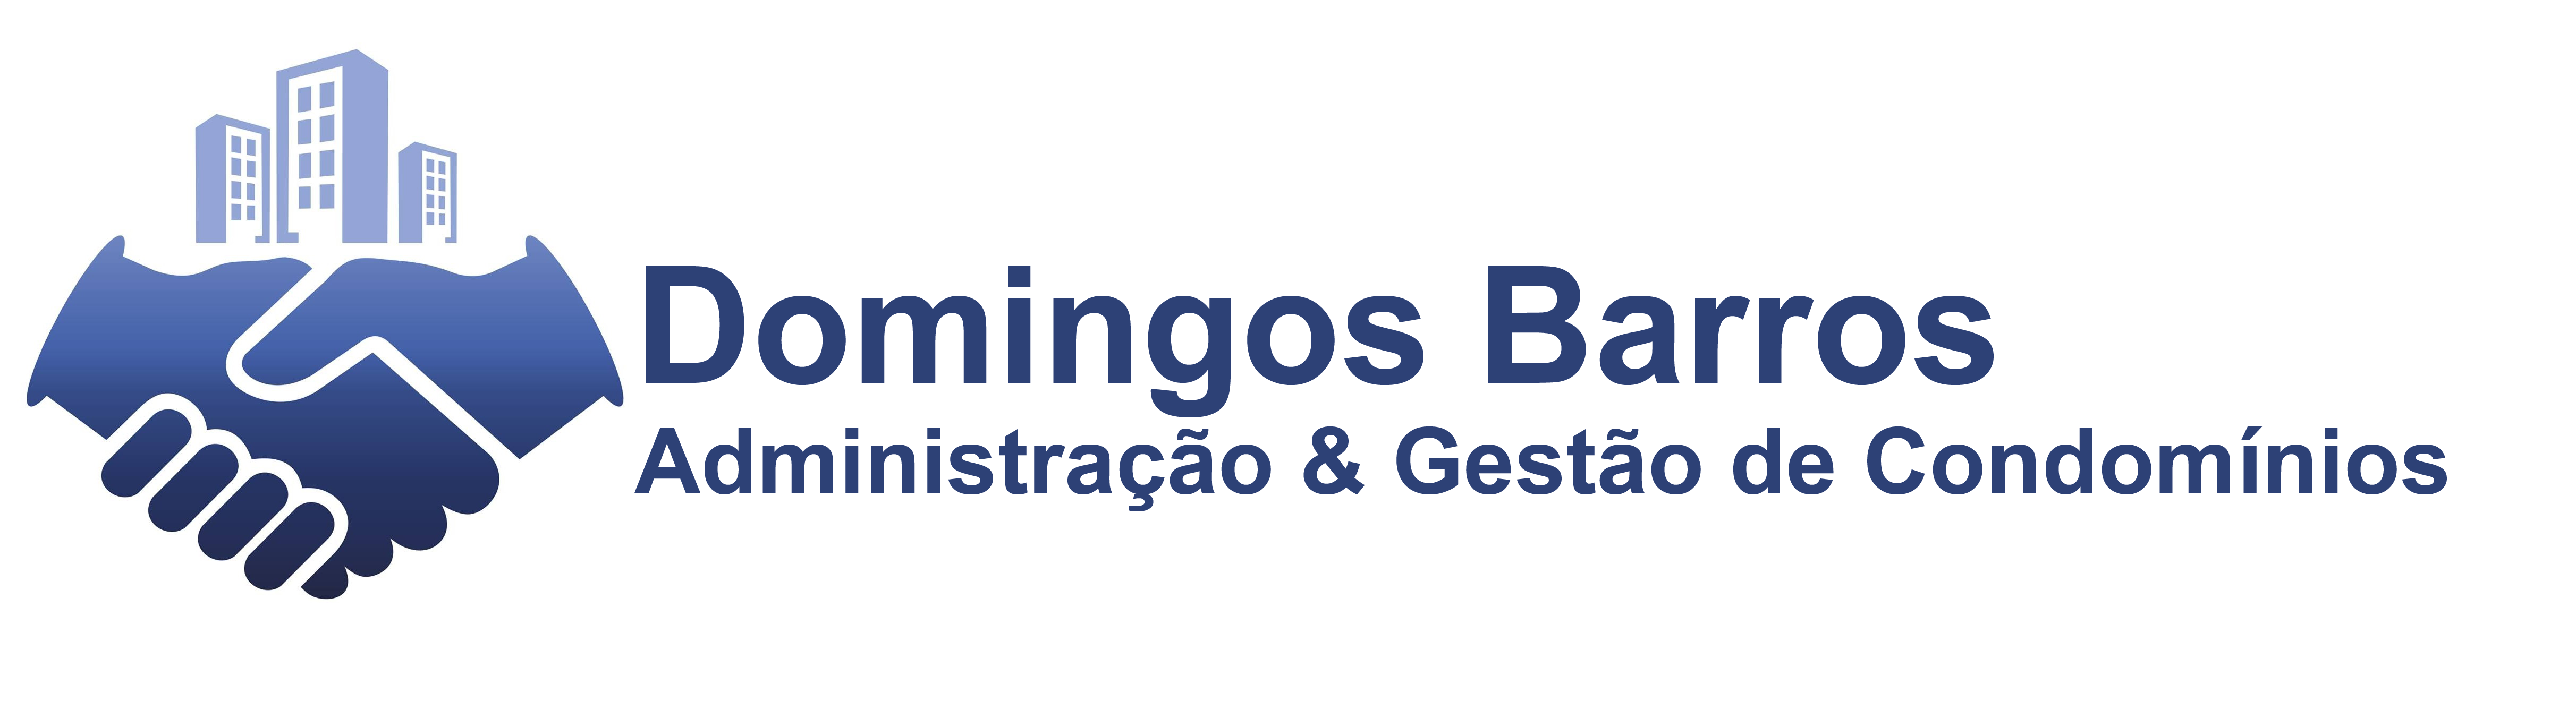 DOMINGOS BARROS - GESTÃO DE CONDOMÍNIOS